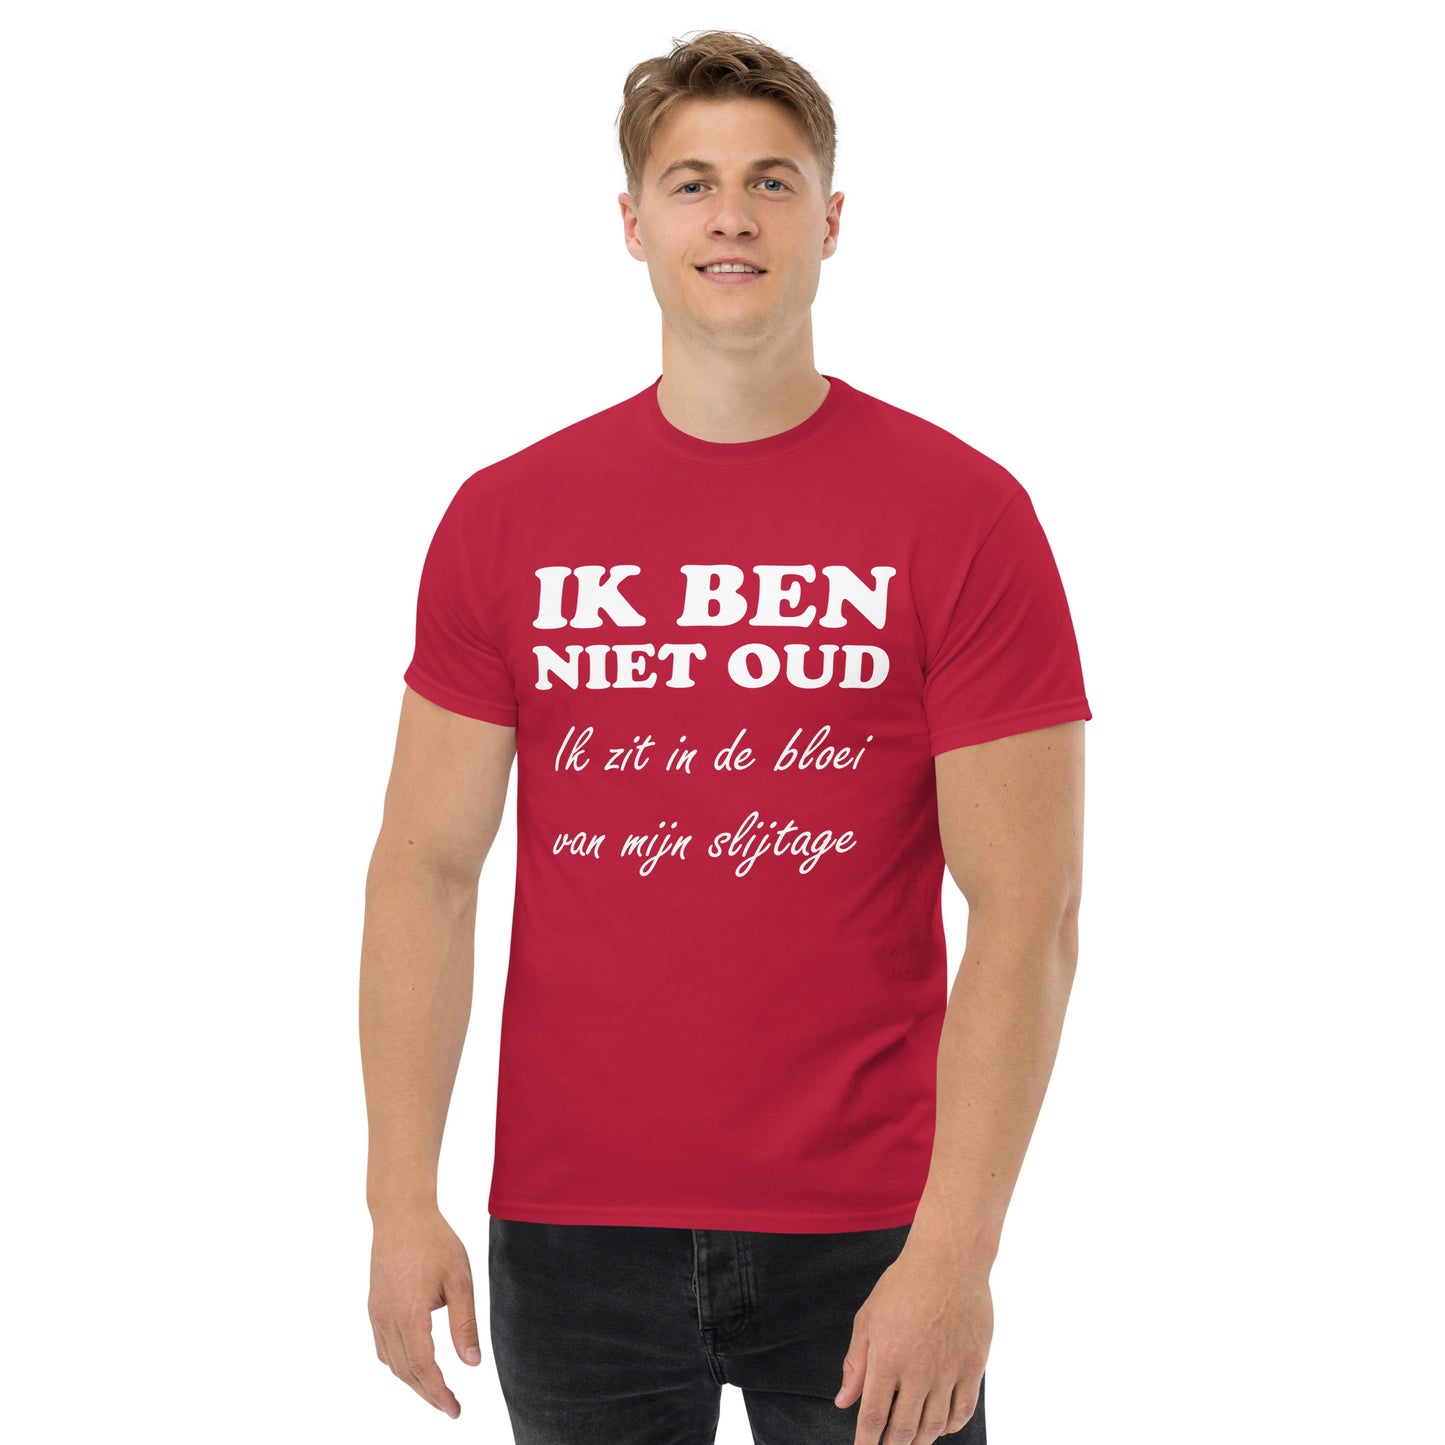 Cardinal T-shirt with the text in white "IK BEN NIET OUD ik zit in de bloei van mijn slijtage"